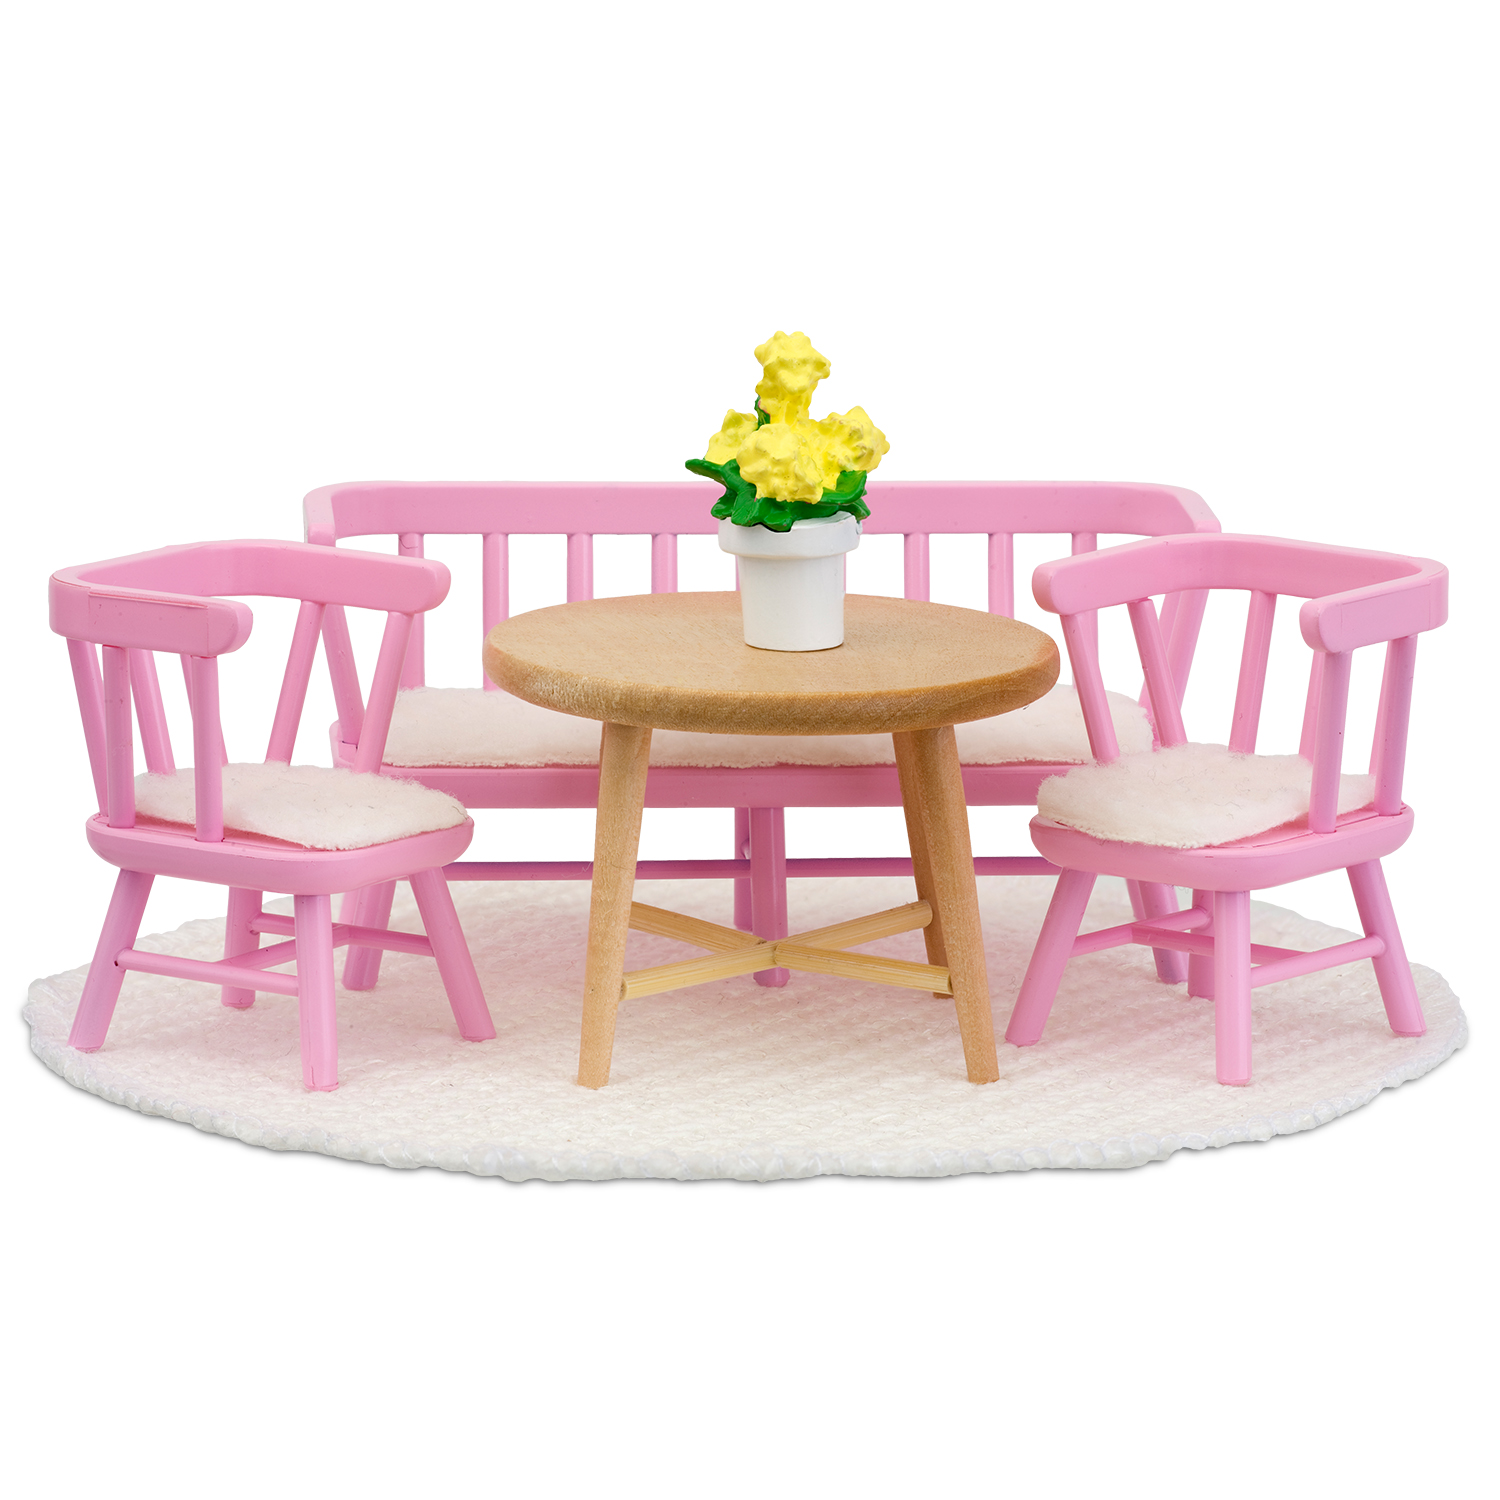 Lundby lundby dukkehusmøbler spisebordssæt lyserød